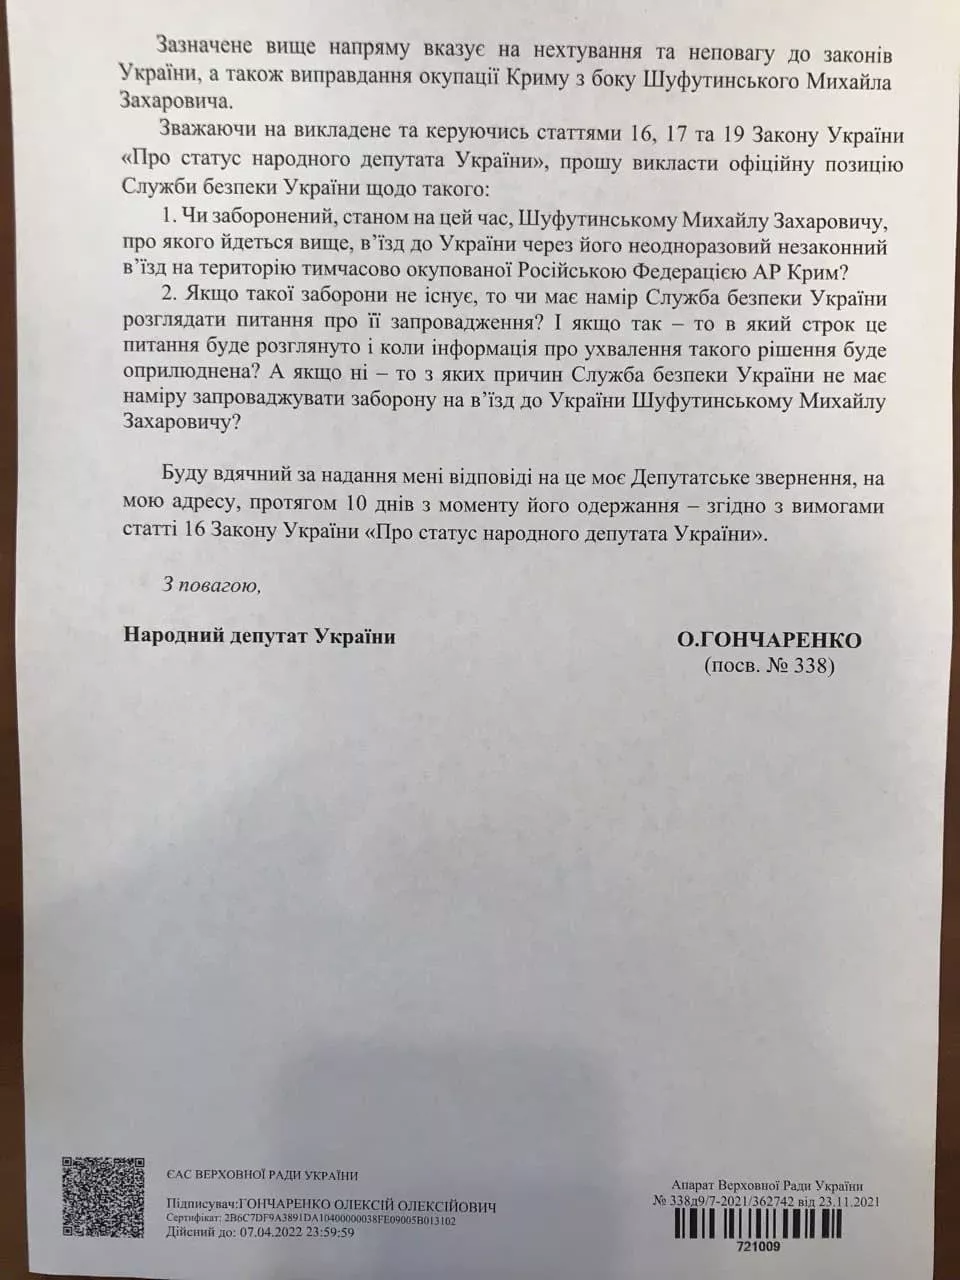 Депутатское обращение о запрете на въезд в Украину Михаилу Шуфутинскому.